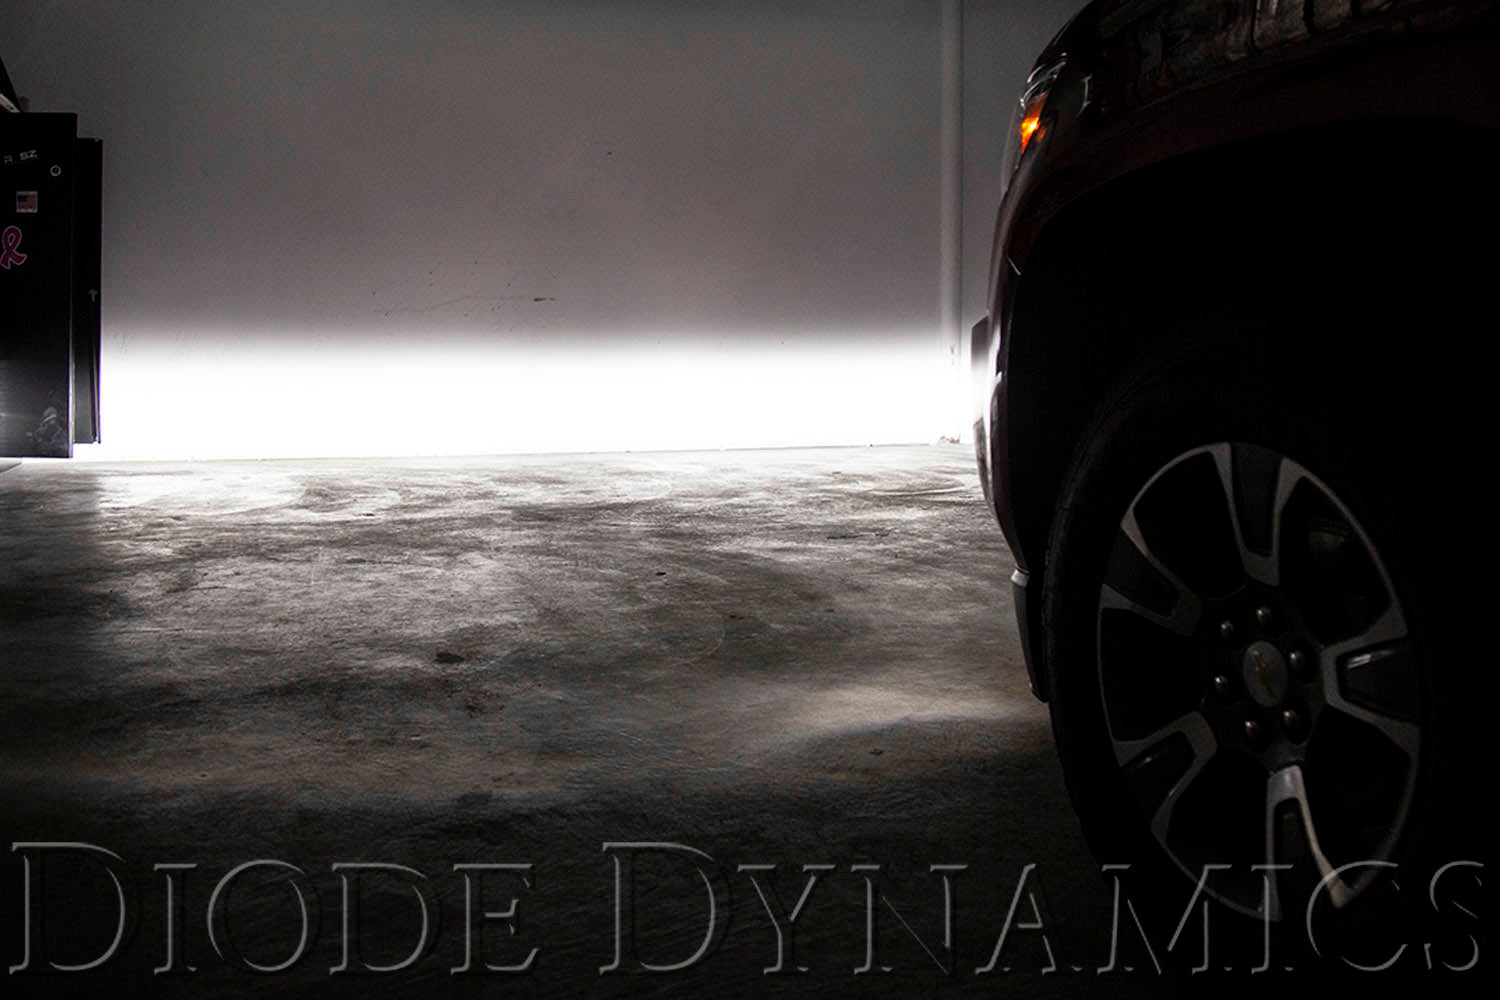 SS3 LED Fog Light Kit for 2007-2014 Chevrolet Suburban Yellow SAE Fog Pro Diode Dynamics